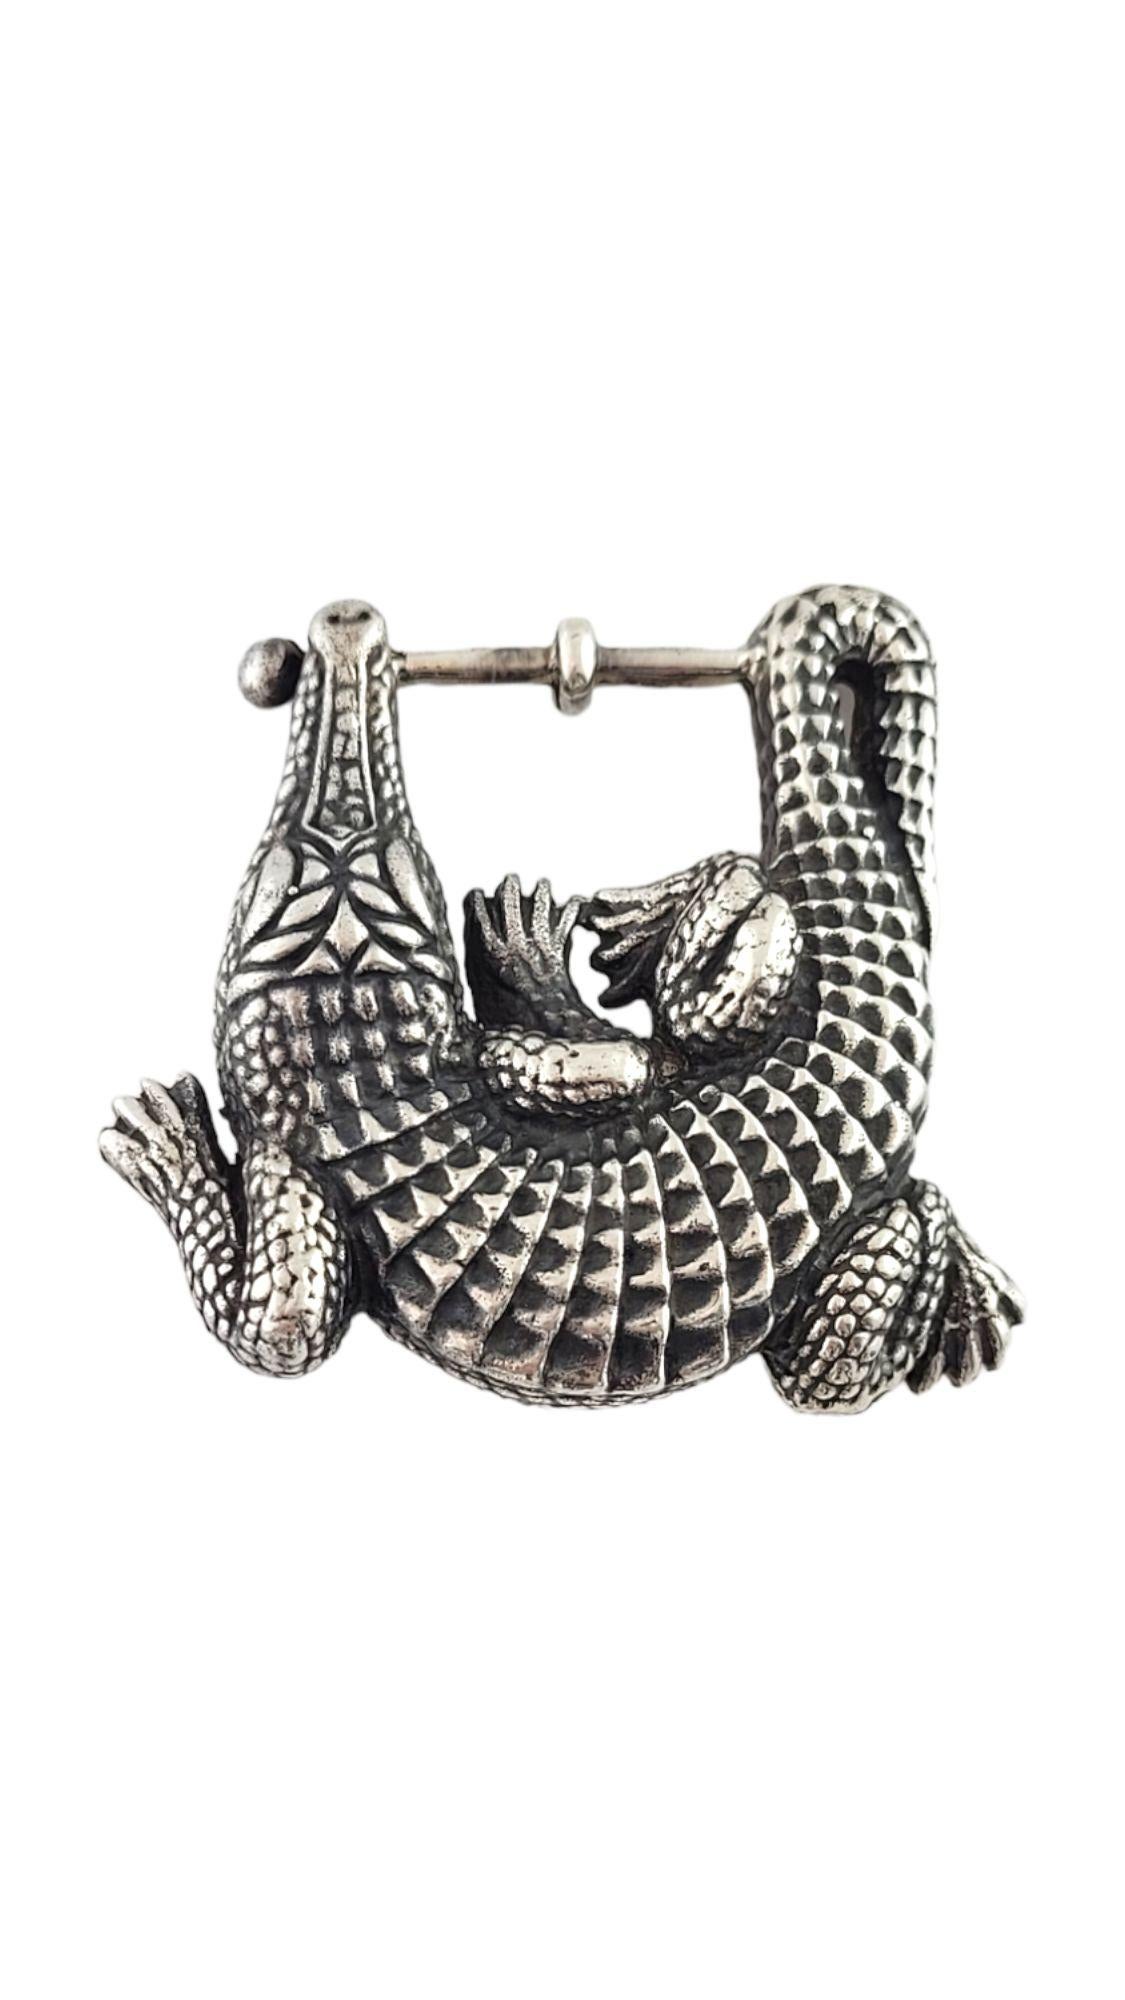 Boucle de ceinture vintage en alligator KIESELSTEIN-CORD

Cette boucle de ceinture en alligator magnifiquement détaillée est fabriquée en argent sterling par le designer KIESELSTEIN-CORD !

Taille : 51.8mm X 59.9mm X 19.2mm

Poids : 56,6 g/ 36,3